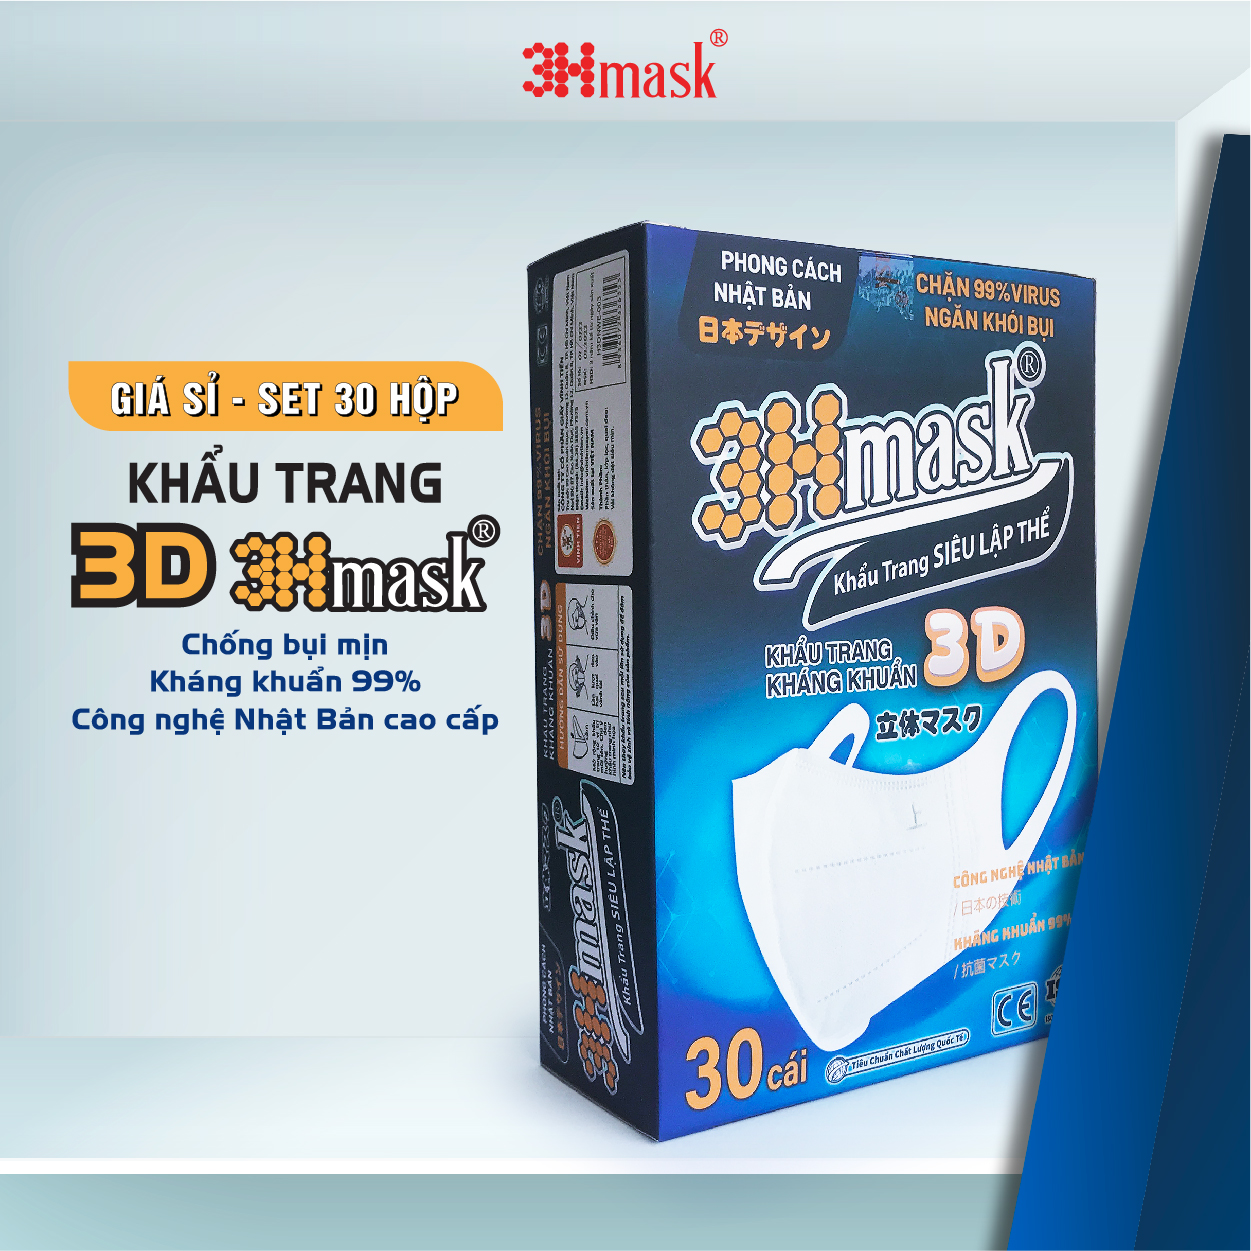 [Giá sỉ] Set 30 khẩu trang 3D 3Hmask chống bụi mịn, kháng khuẩn 99%, công nghệ Nhật Bản cao cấp